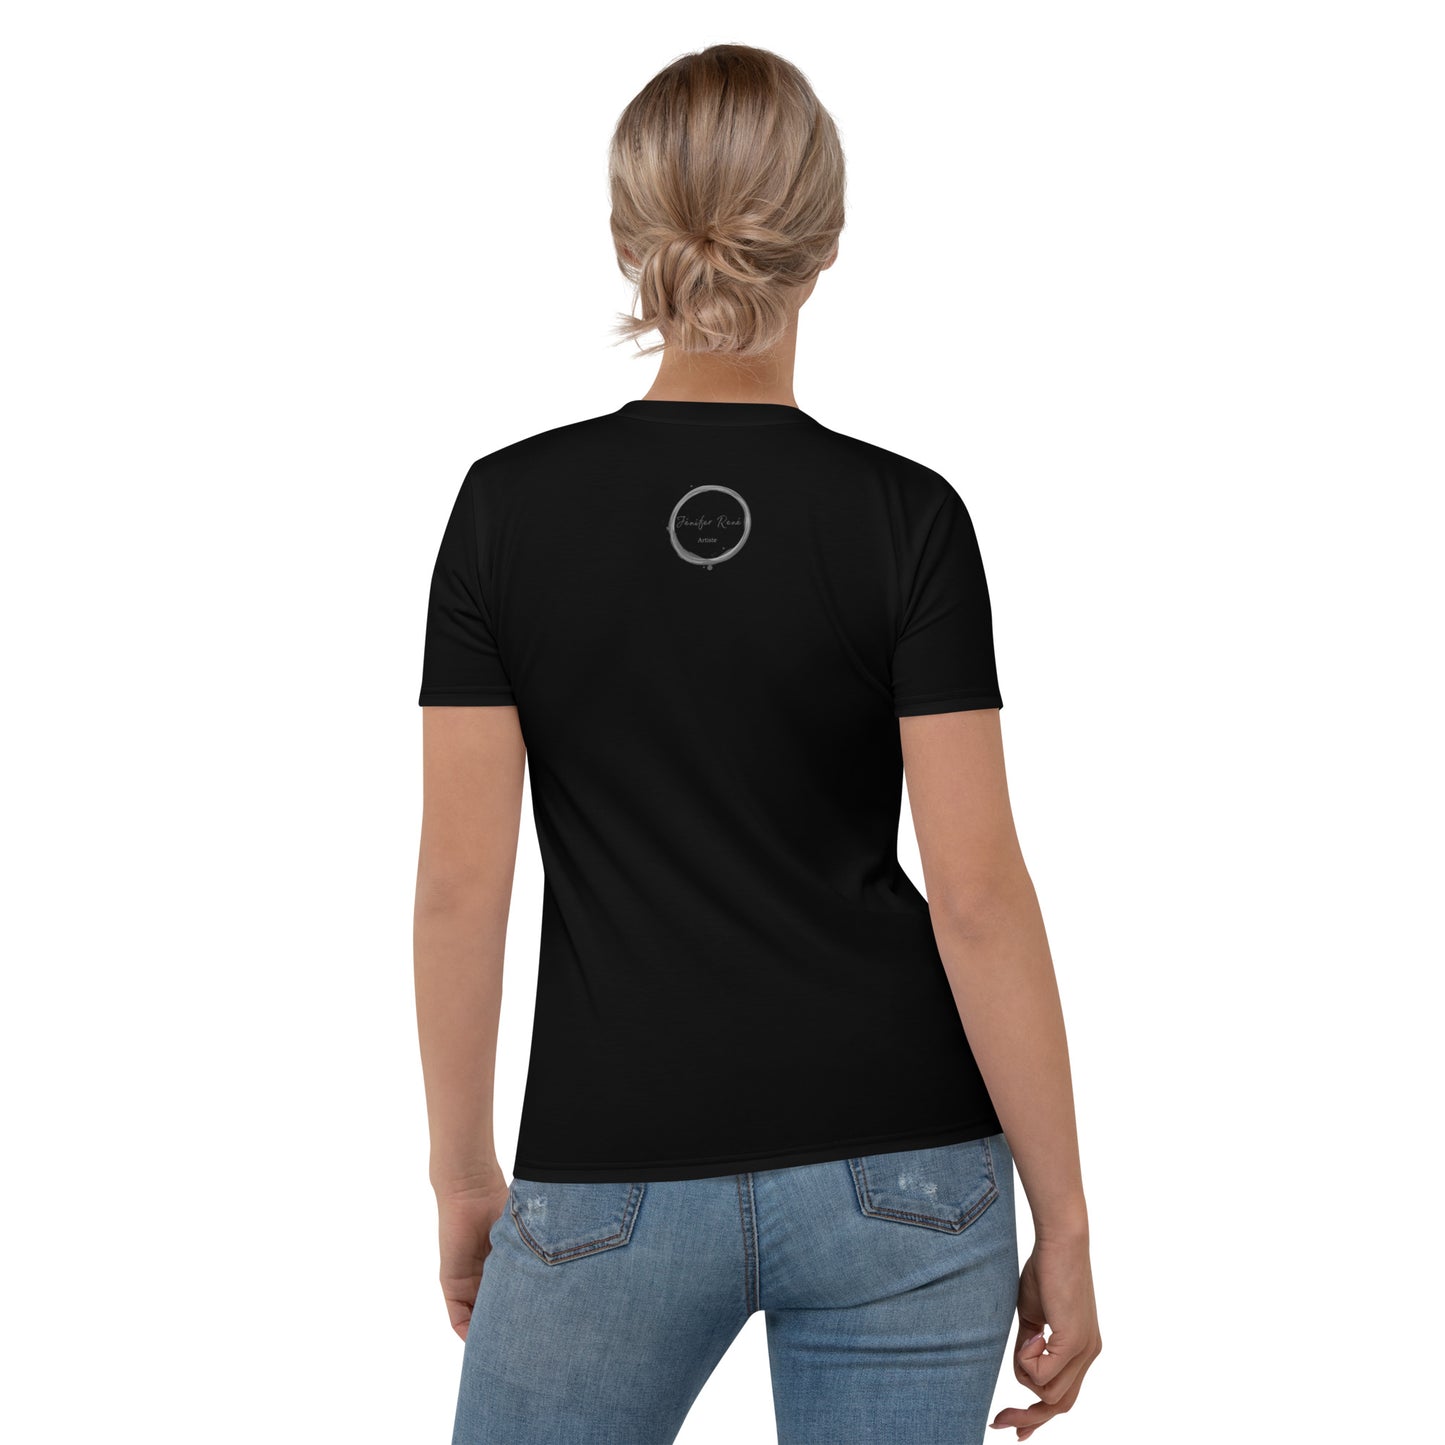 T-shirt noir pour femme - Blue Jay